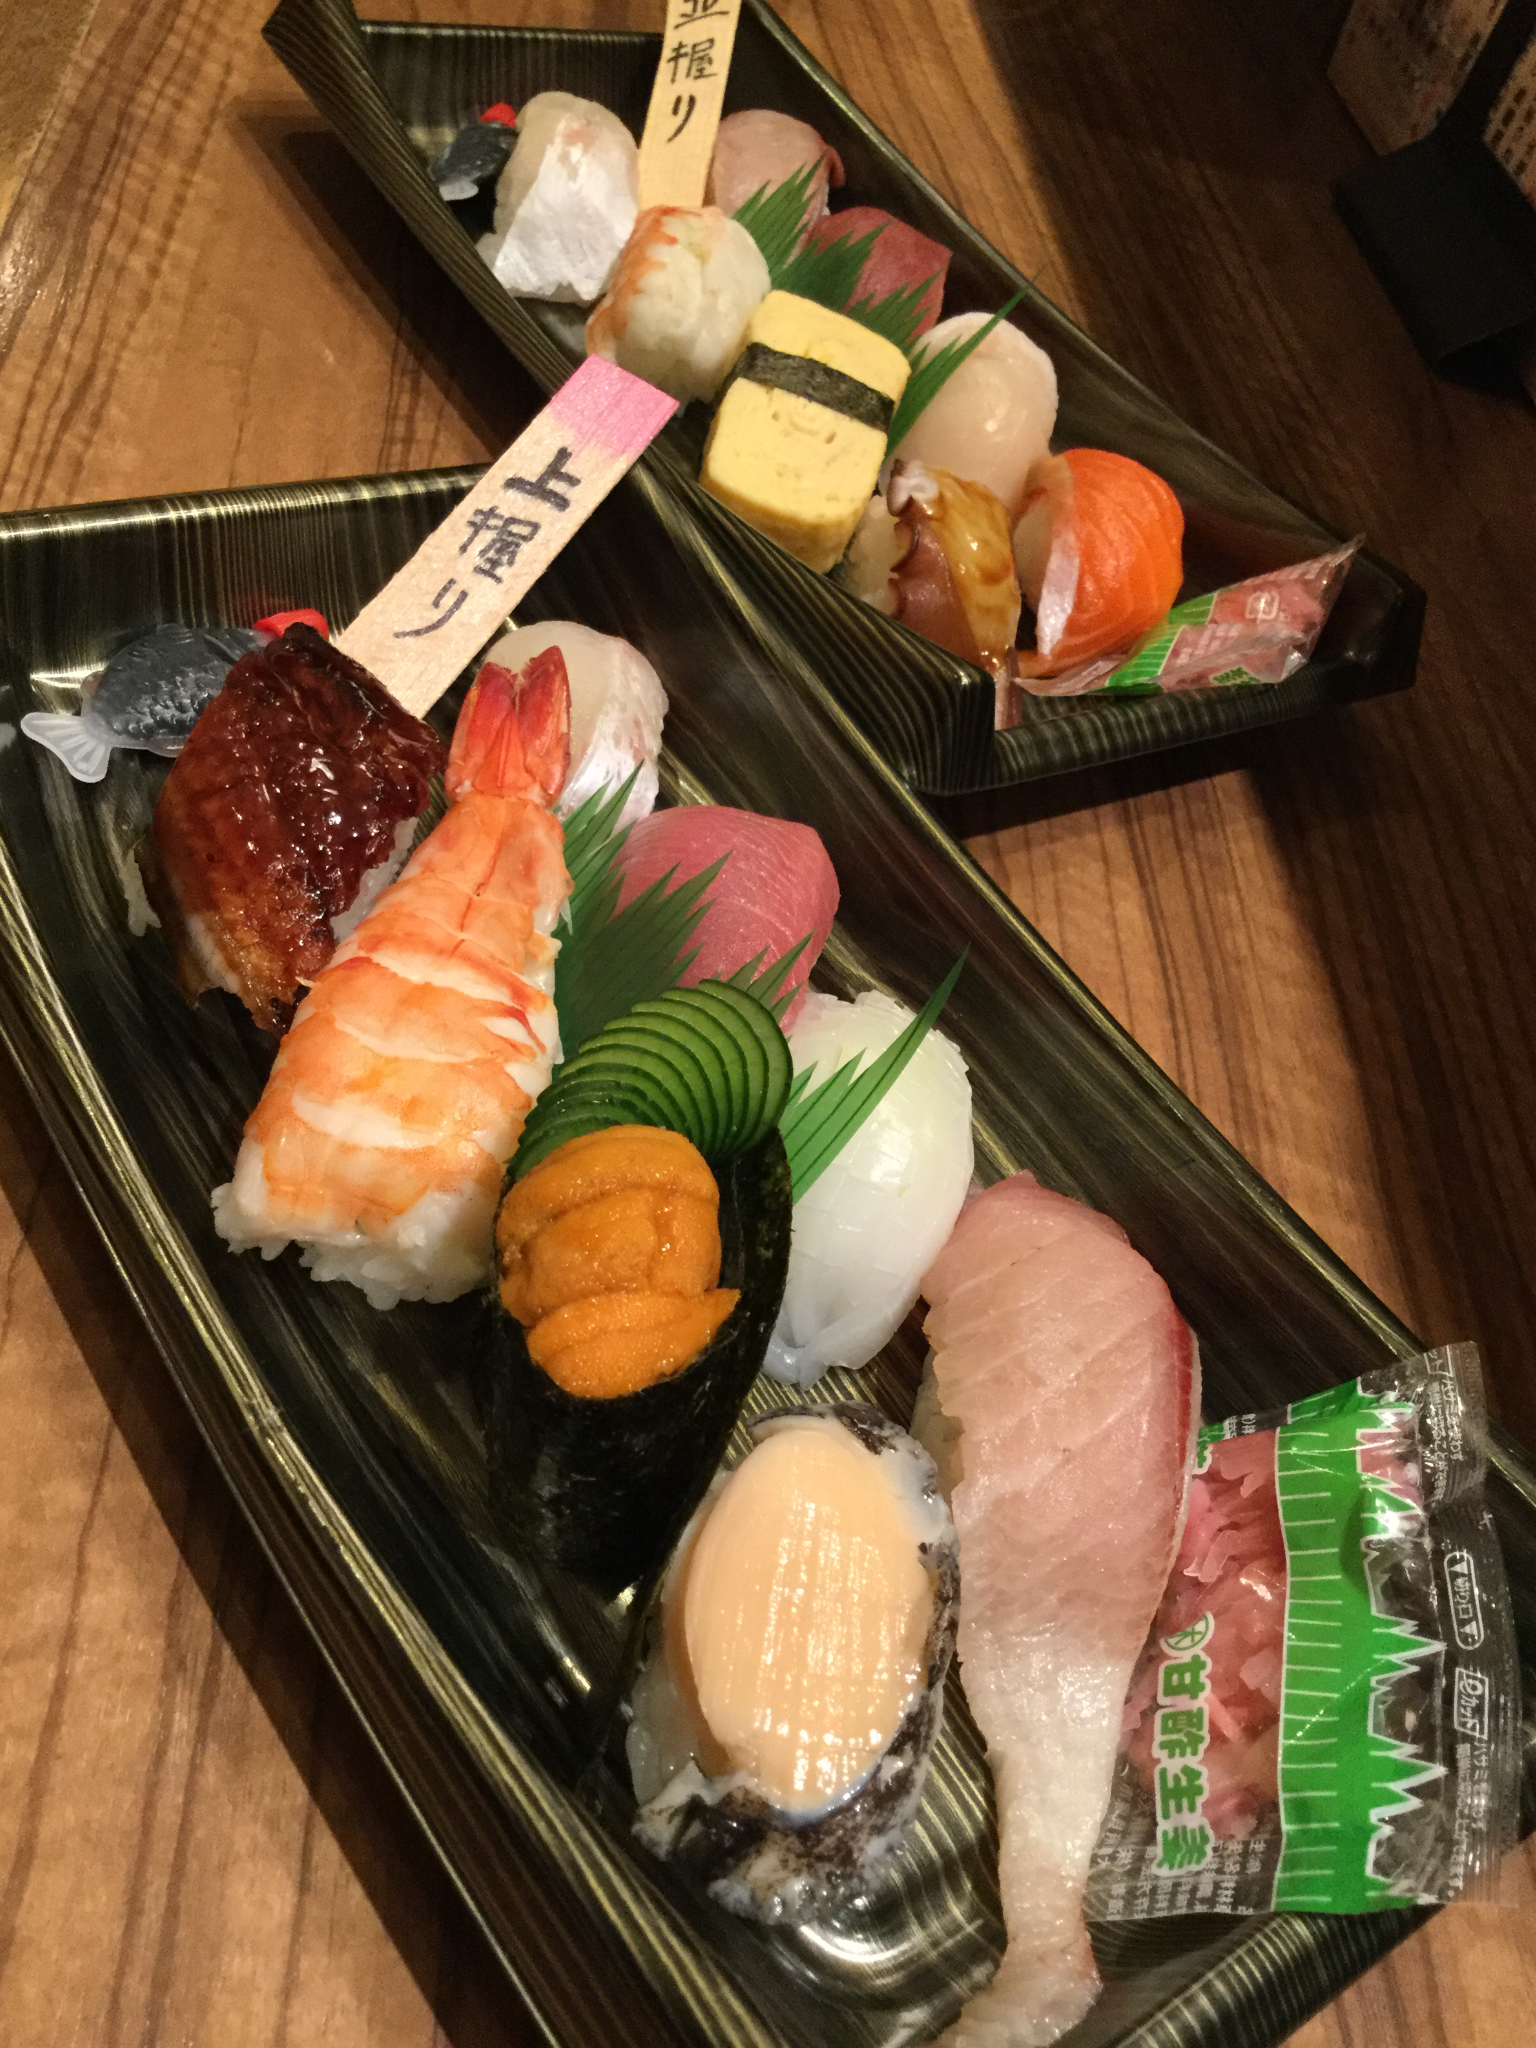 高石おうちじかん、寿司のお持ち帰りはすし竜へ、新鮮なお魚でおいしい握りをお家でもお楽しみください。